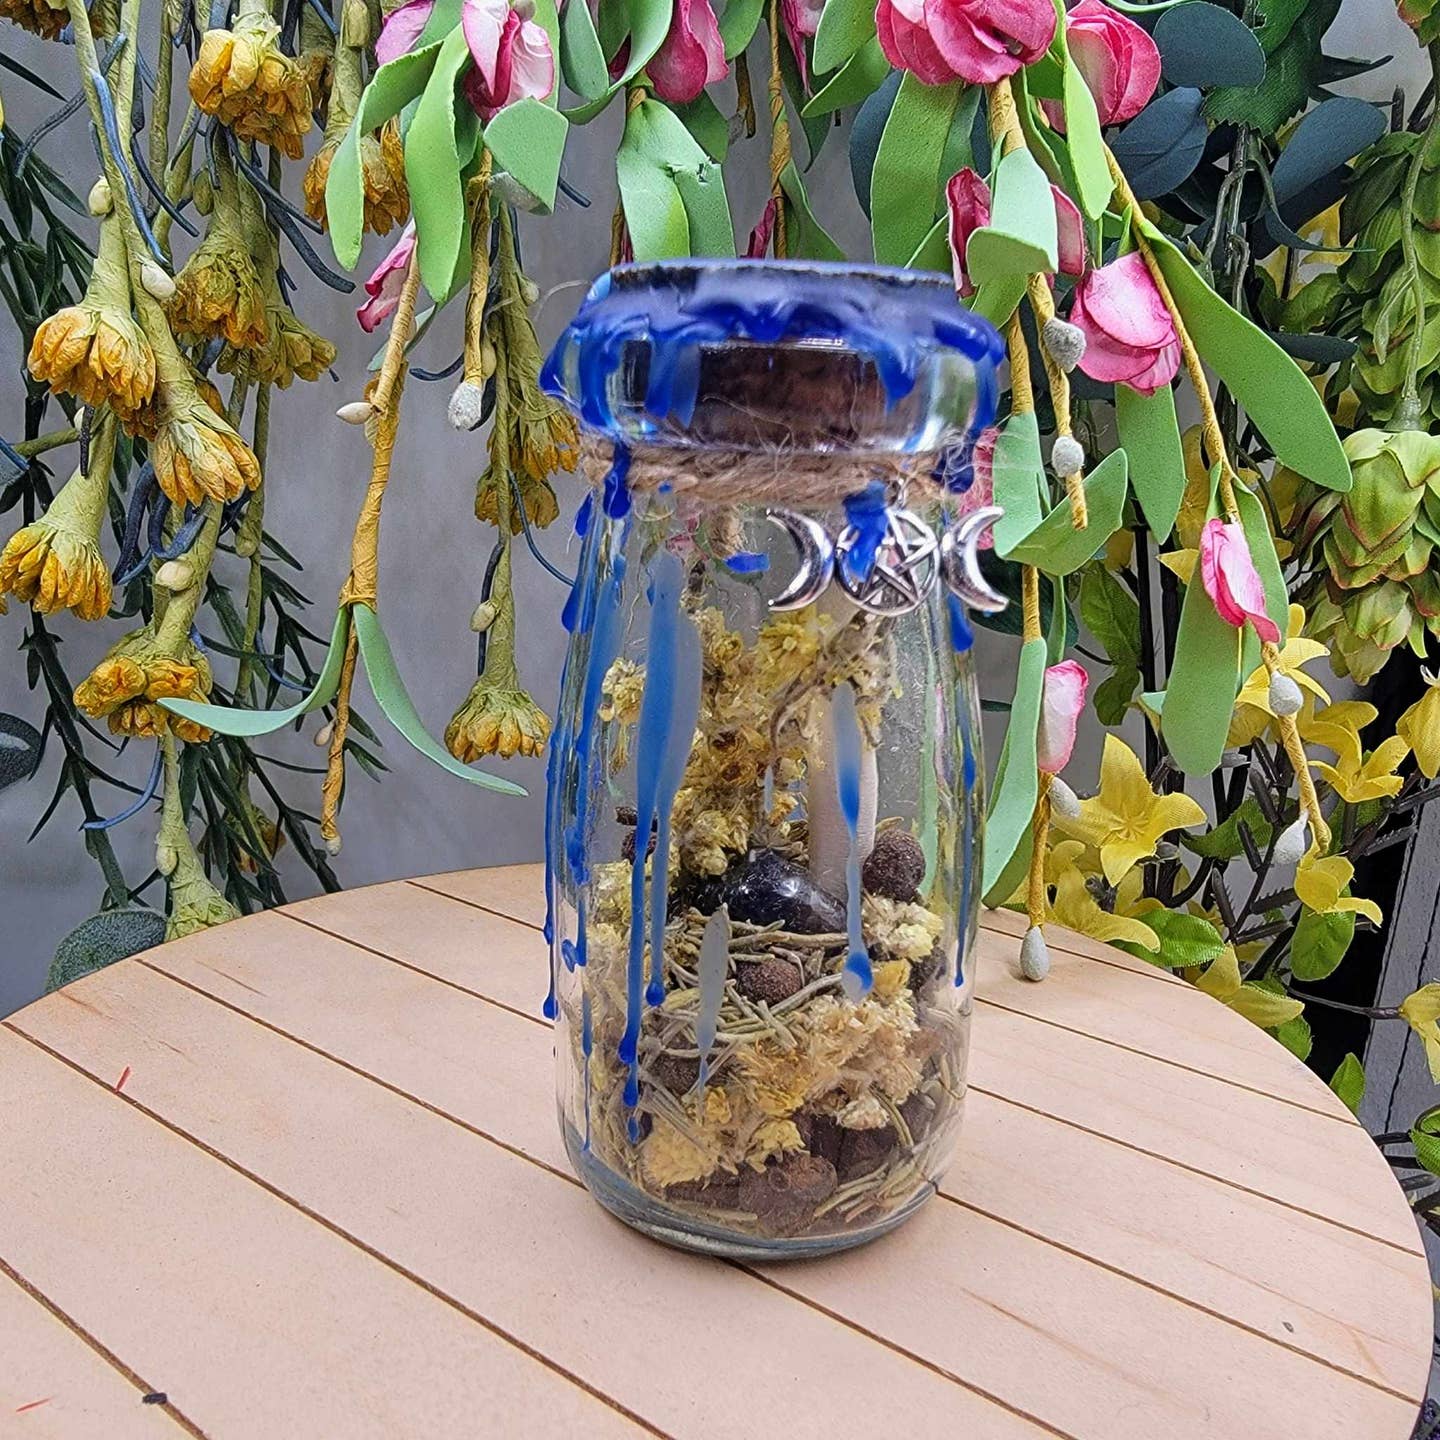 Intention Jar DIY Kit - Healing